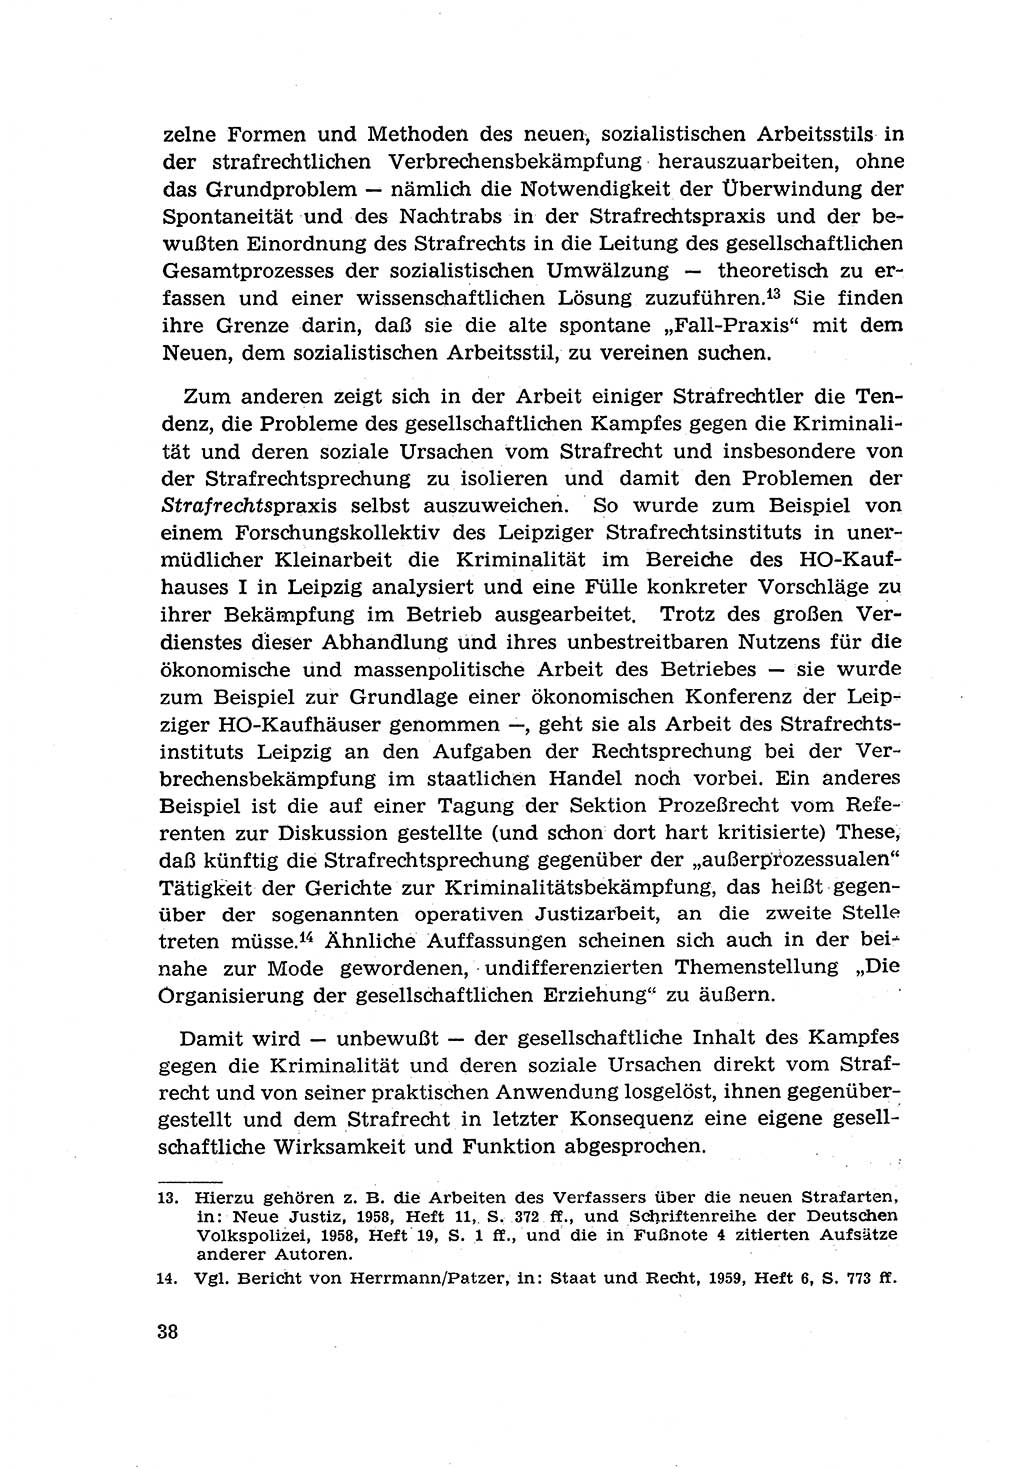 Zur Entwicklung des sozialistischen Strafrechts der Deutschen Demokratischen Republik (DDR) 1960, Seite 38 (Entw. soz. Strafr. DDR 1960, S. 38)